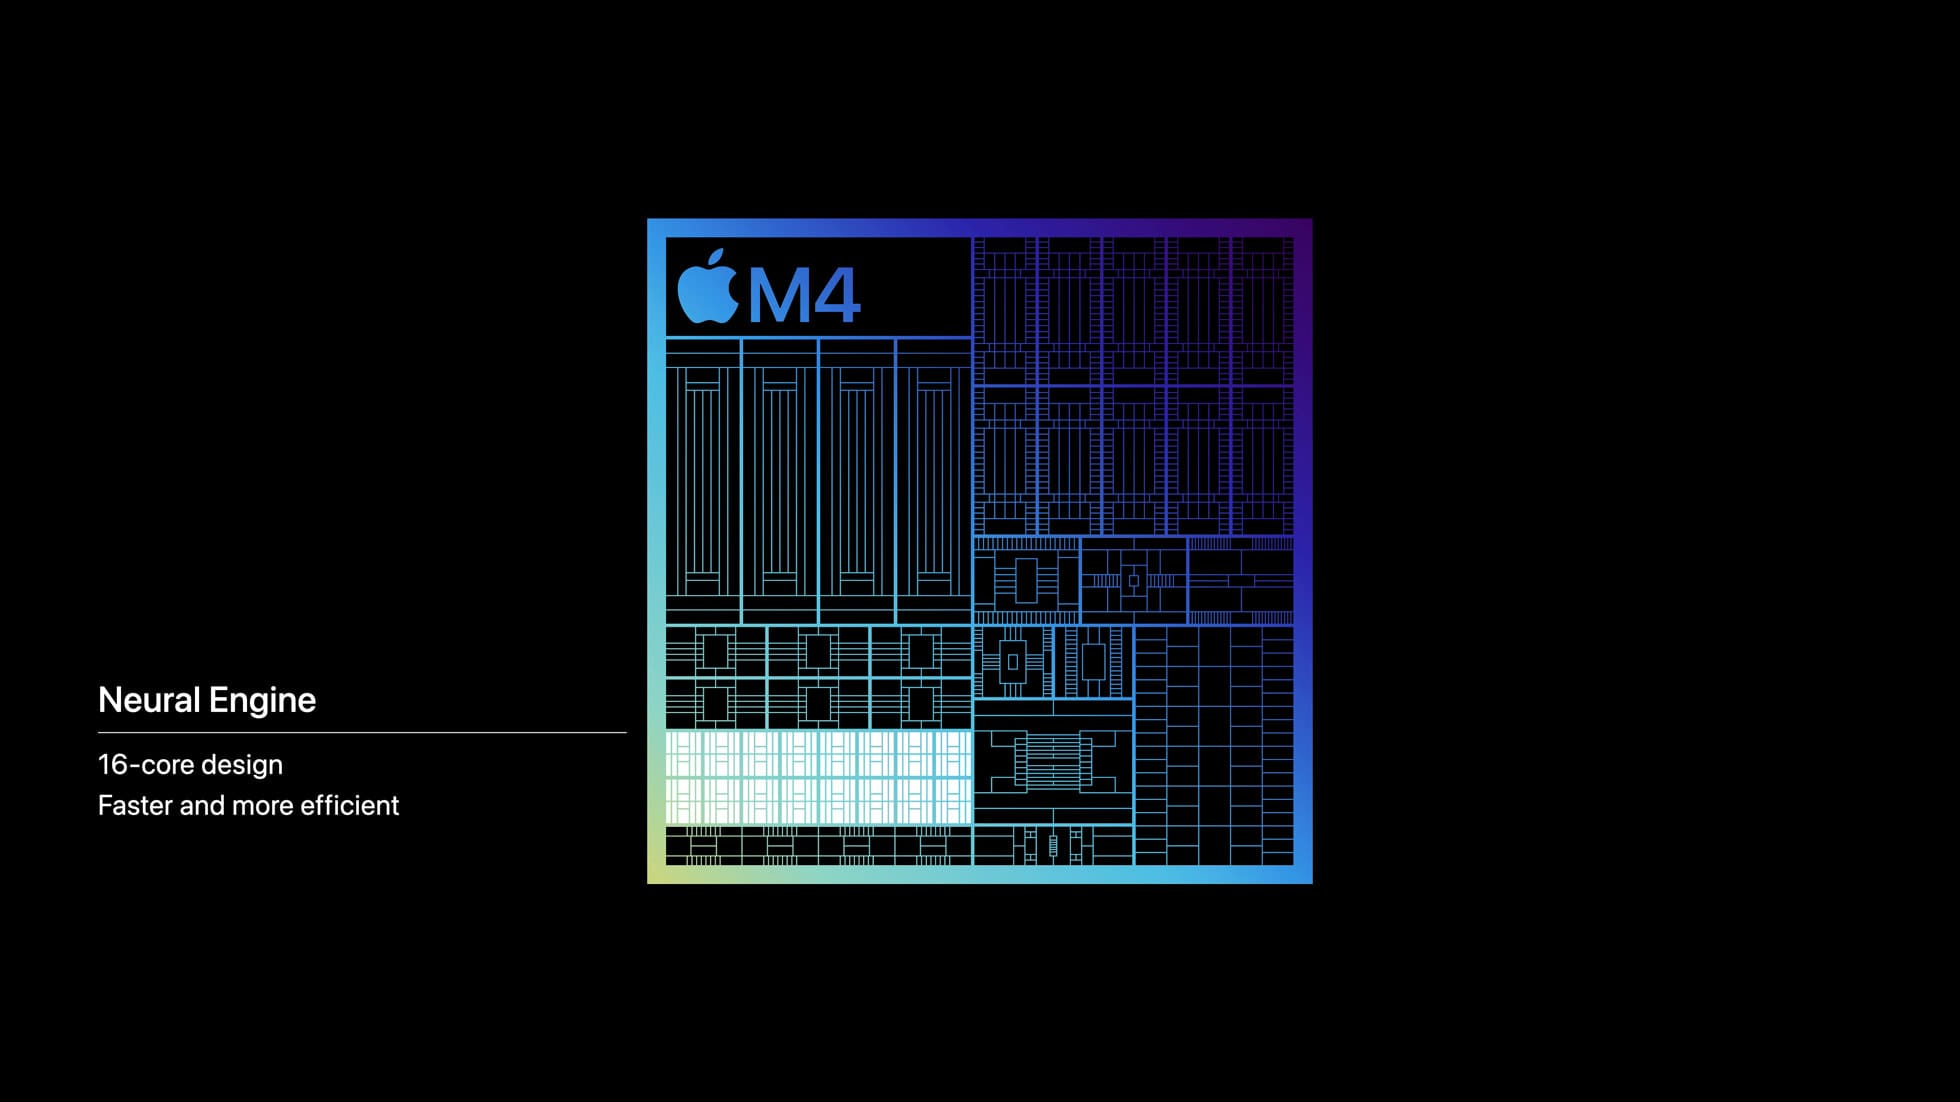 Apple සමාගම විසින් ඔවුන්ගේ නවතම M4 chip එක හදුන්වාදීමට කටයුතු කර​යි